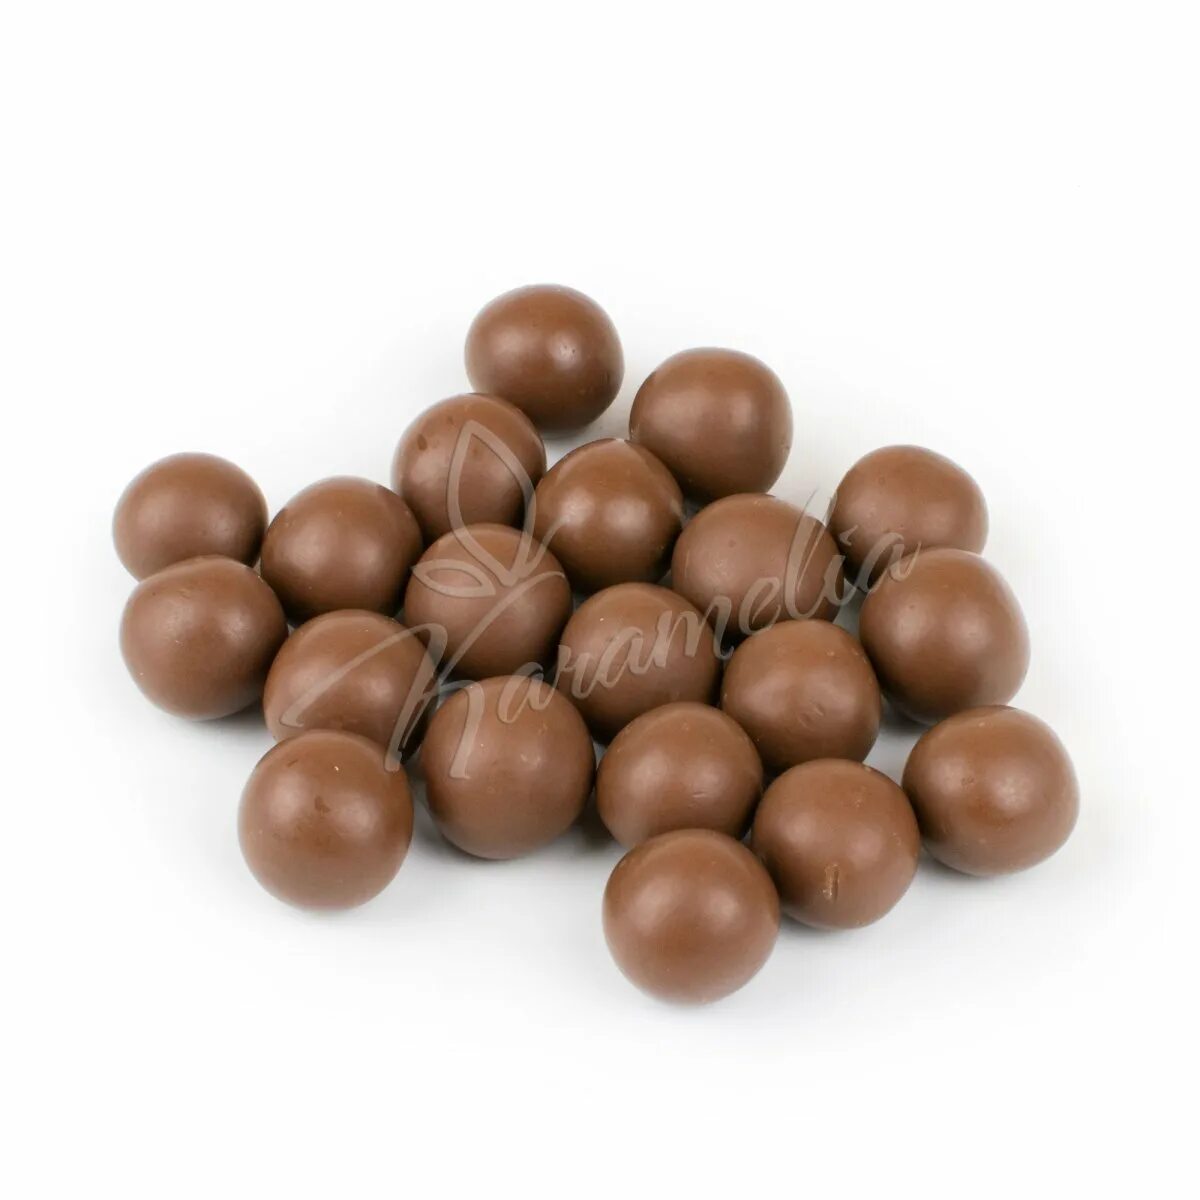 Шоколадные шарики Кранч. Шоколадные рисовые шарики Maltesers. Мартинес шоколадные шарики. Мальтизерс конфеты.